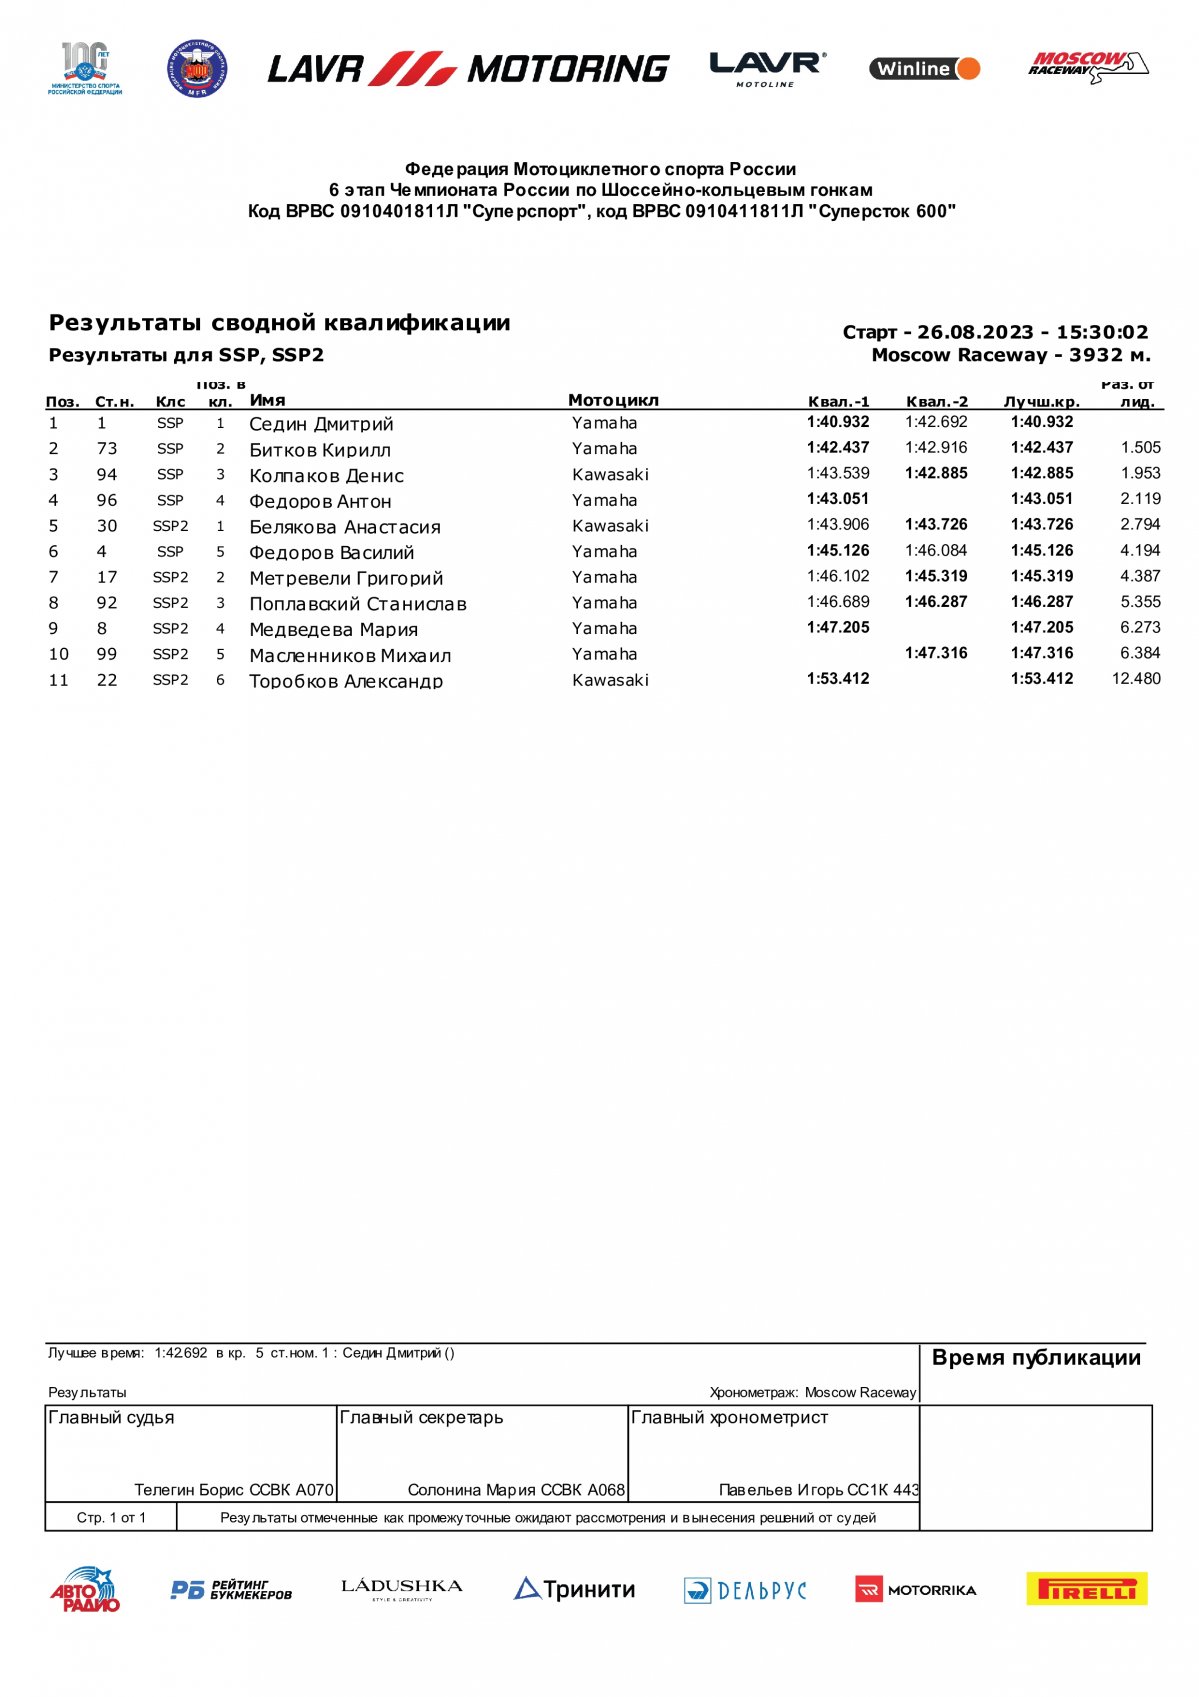 Результаты квалификации 6 этапа Чемпионата России Lavr Motoring - Supersport (27/08/2023)